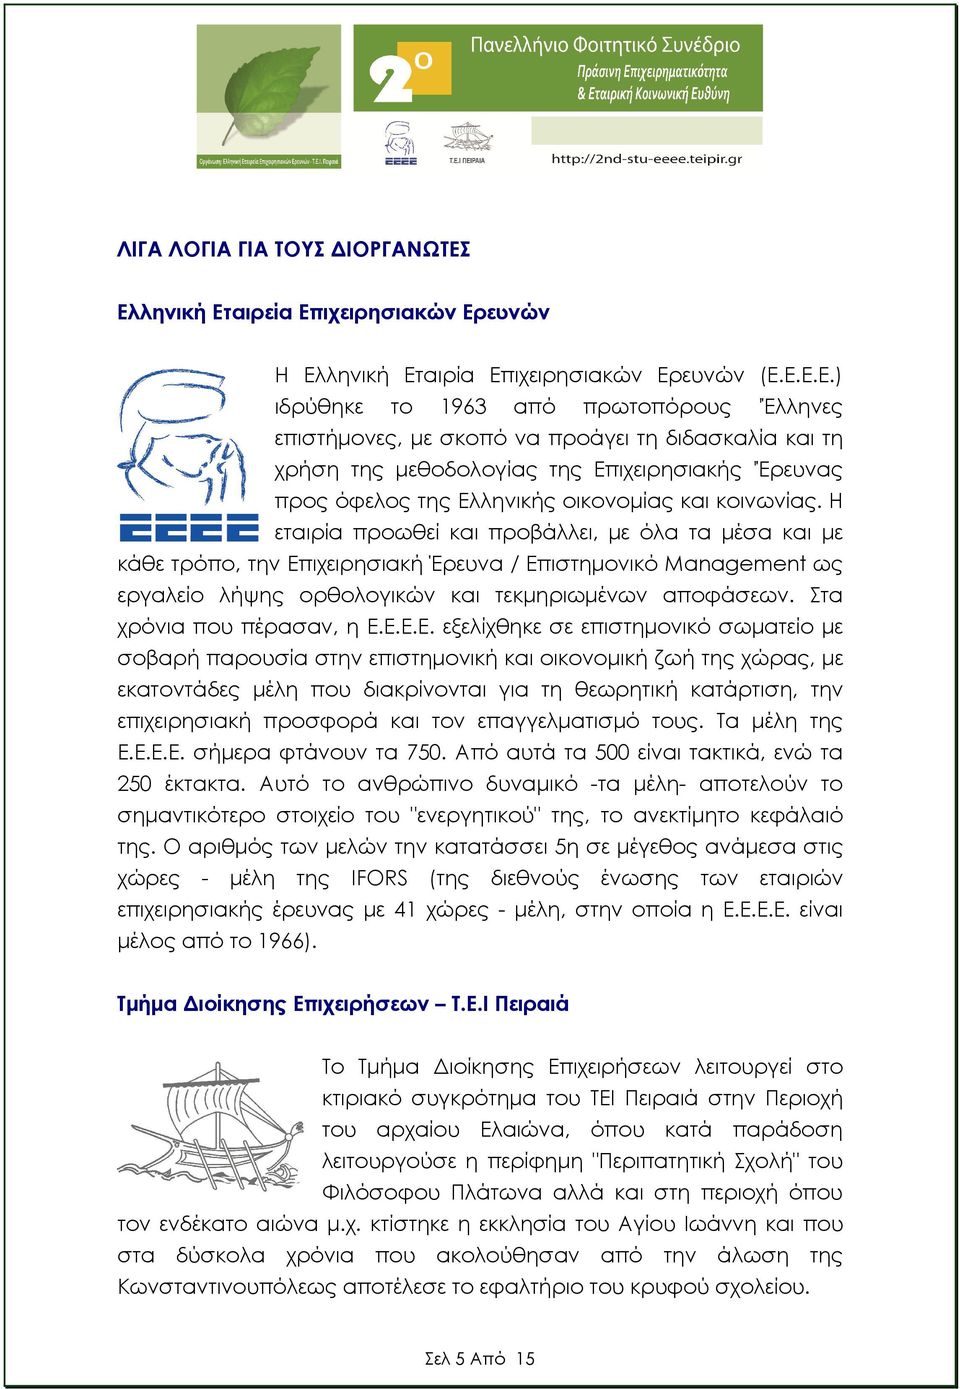 µεθοδολογίας της Επιχειρησιακής 'Έρευνας προς όφελος της Ελληνικής οικονοµίας και κοινωνίας.